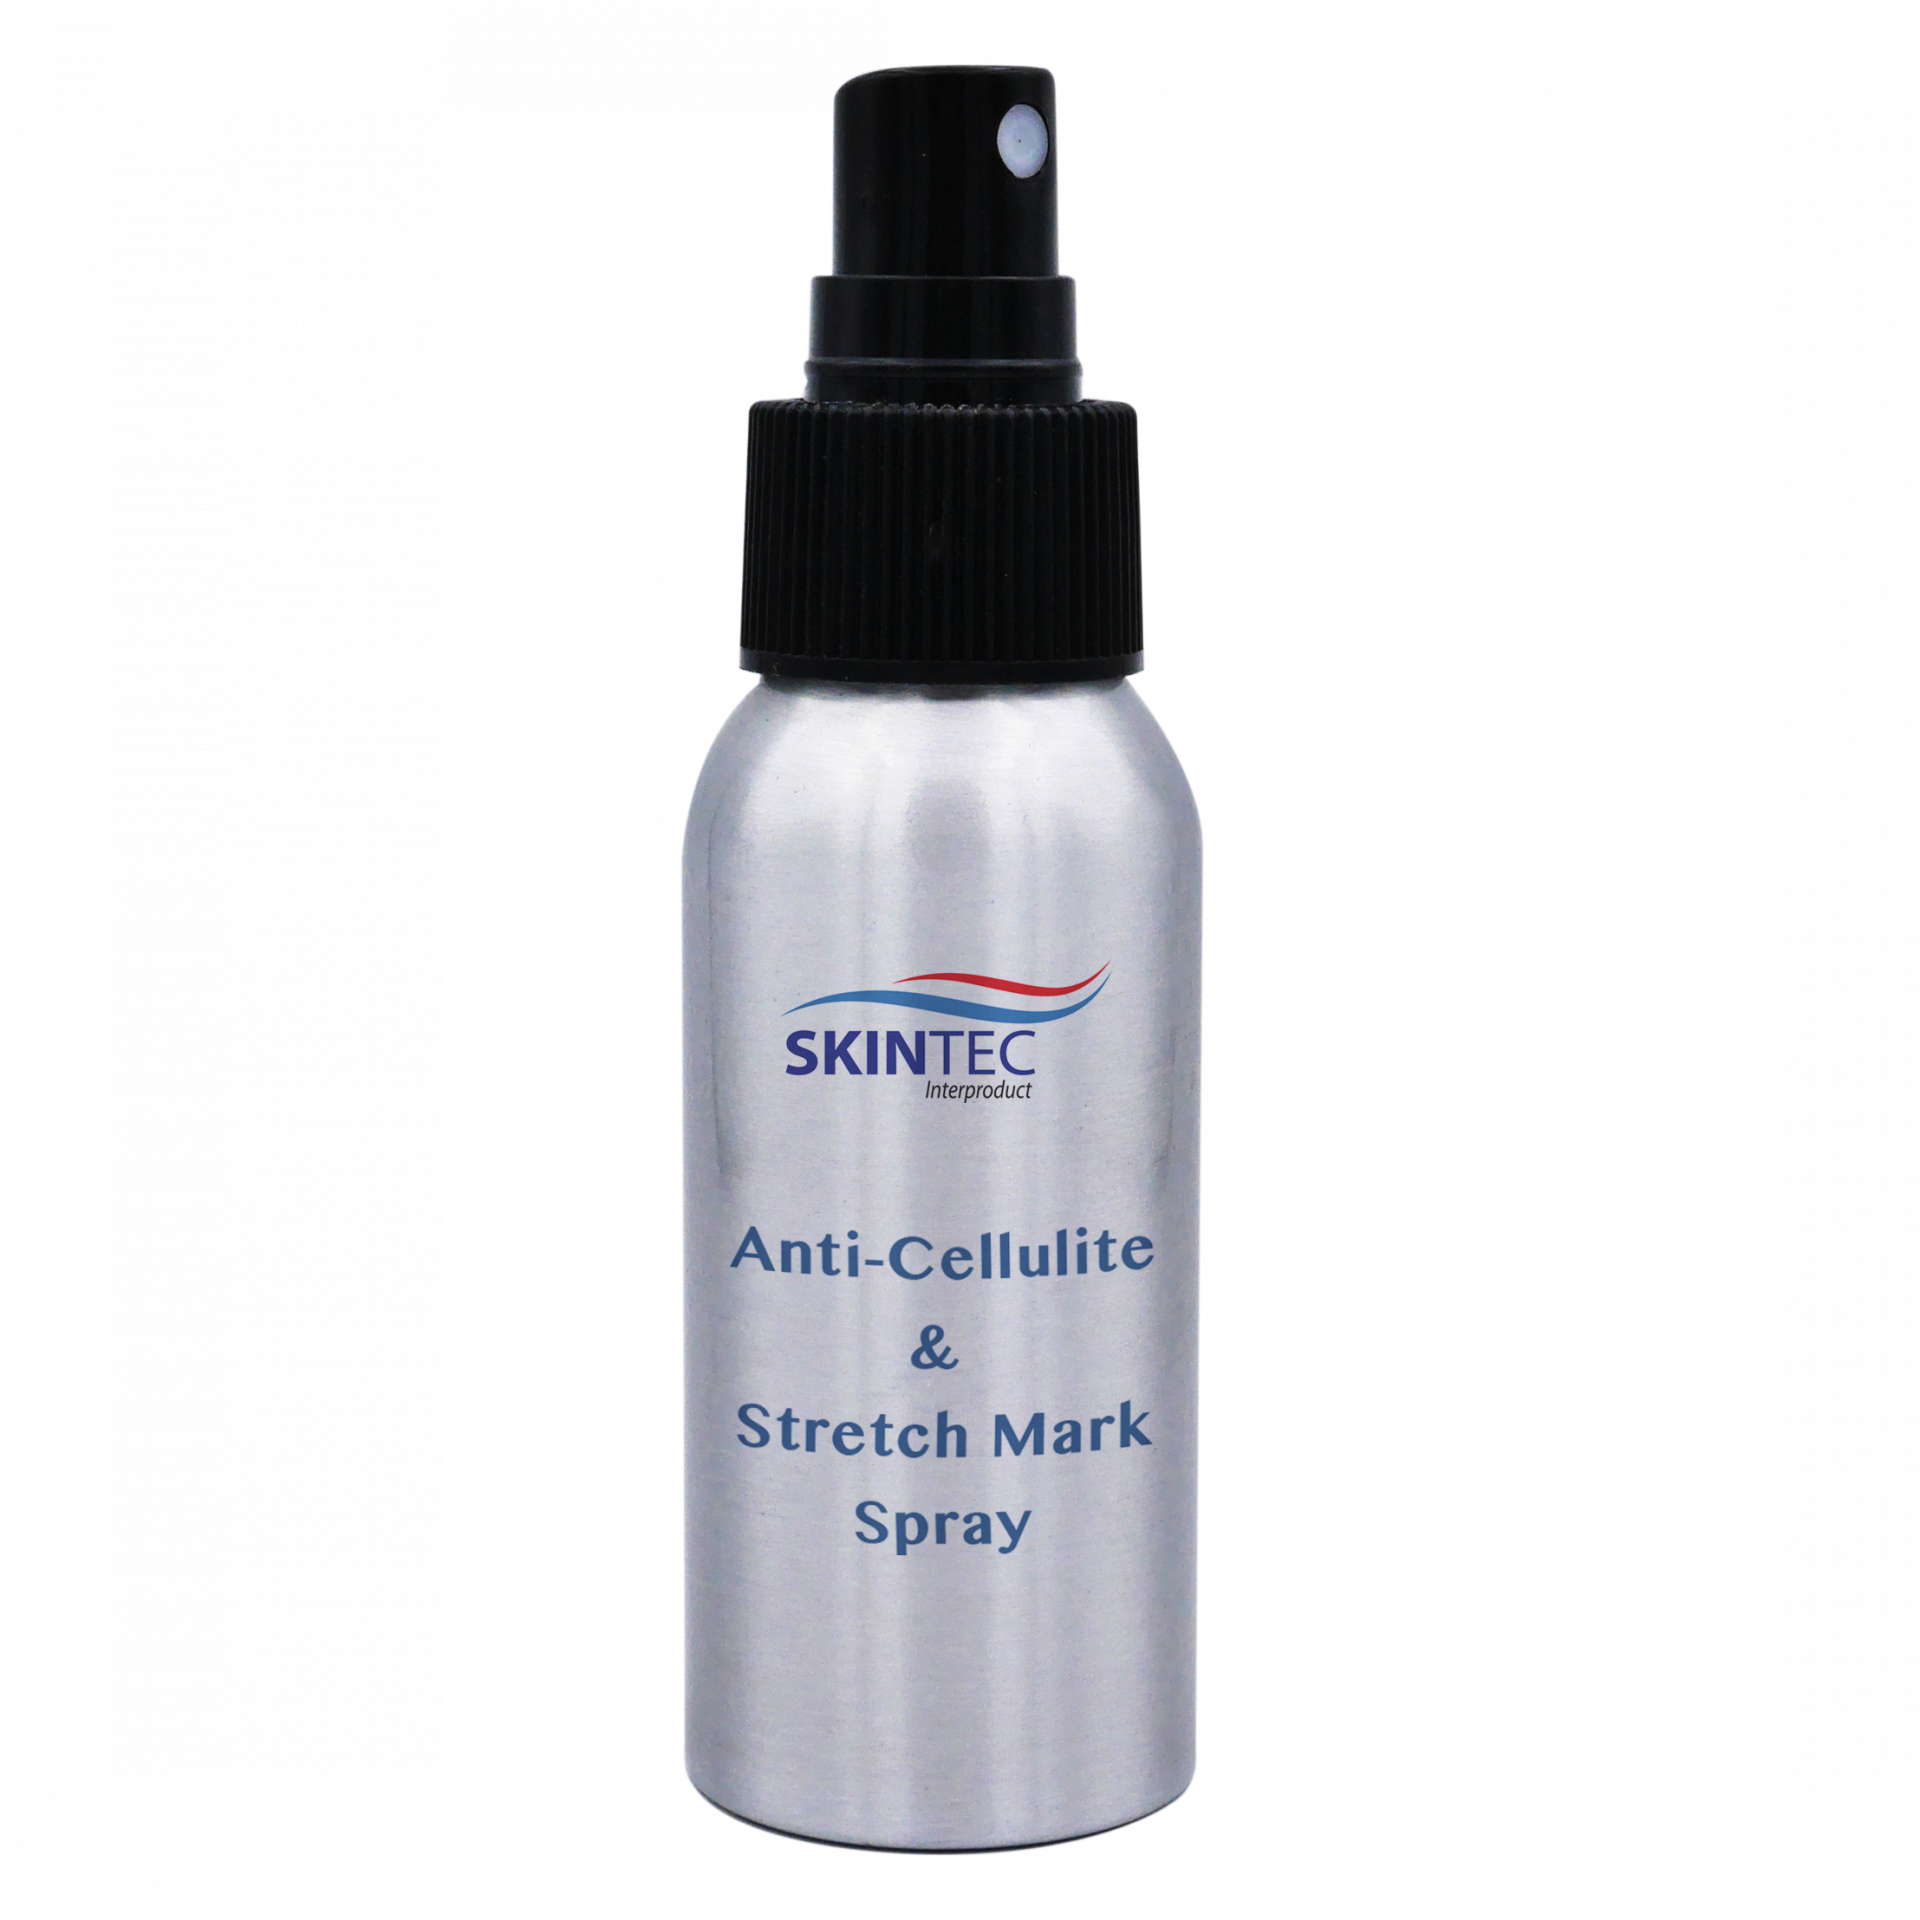 Anti-Cellulite & Stretch Mark Spray